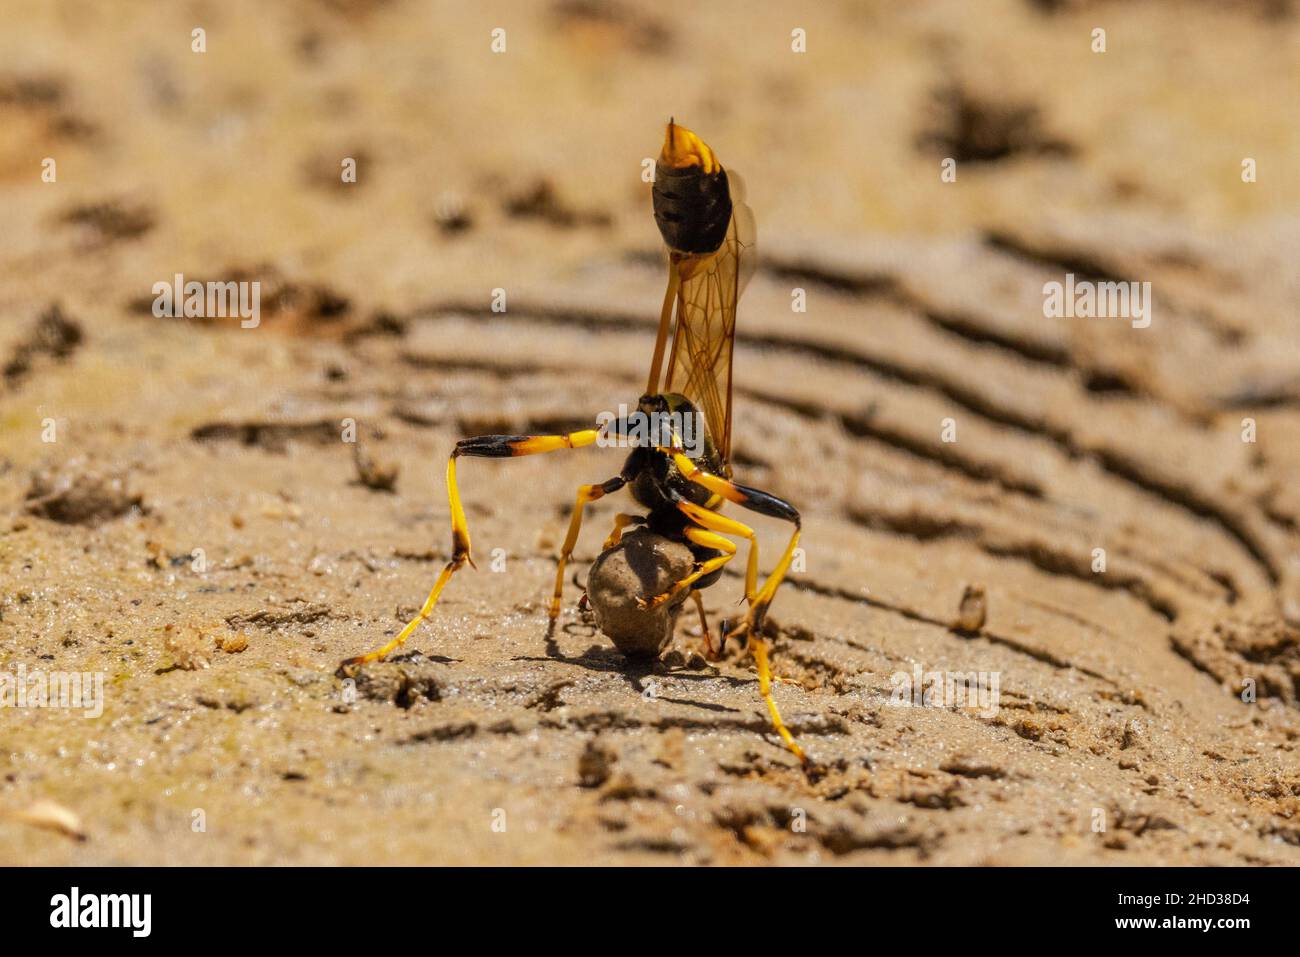 Australian Mud Dauber Wasp Recogida de barro para la elaboración de nidos Foto de stock